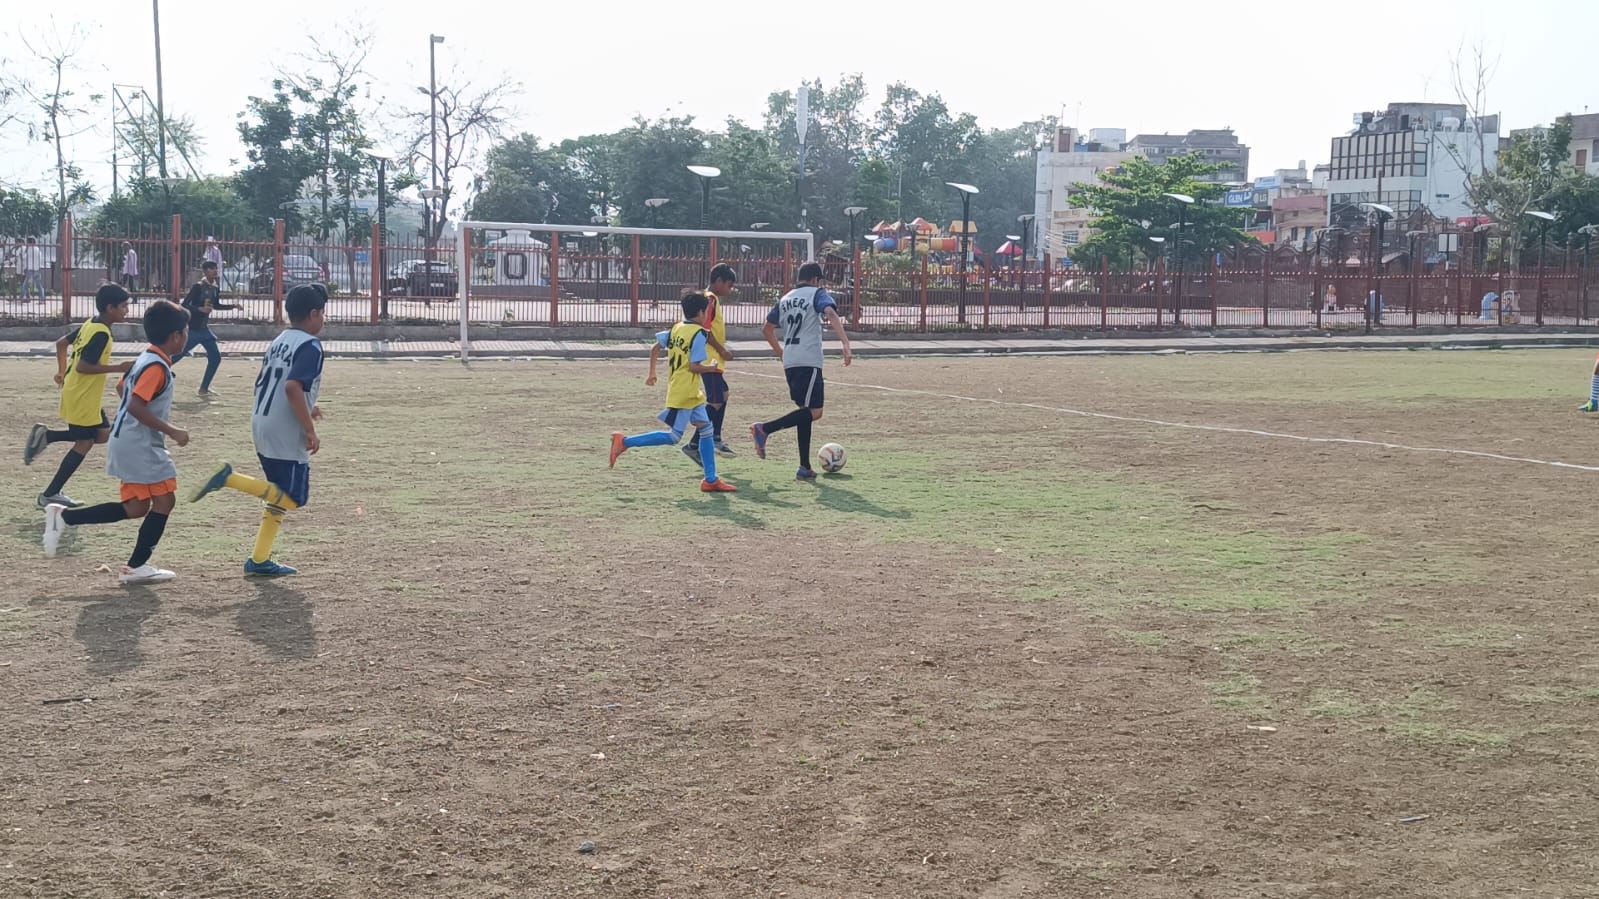 Regional Games: ग्रास रूट डे फुटबॉल चैंपियनशिप में वीएन मोघे टीम की जीत से
शुरुआत